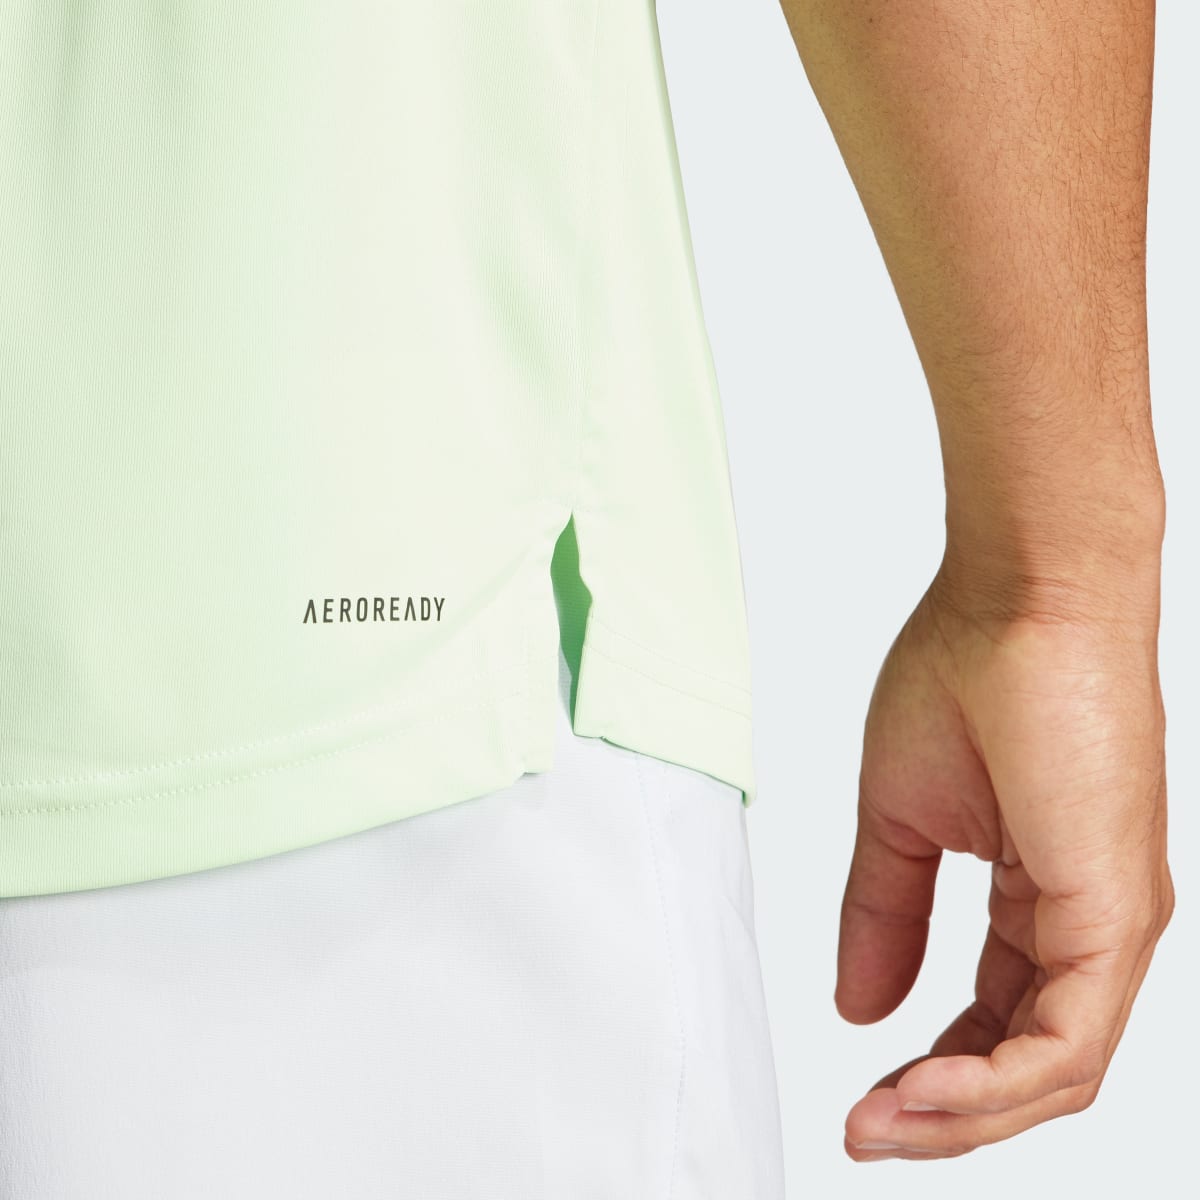 Adidas Club 3-Stripes Tennis Polo Shirt. 7